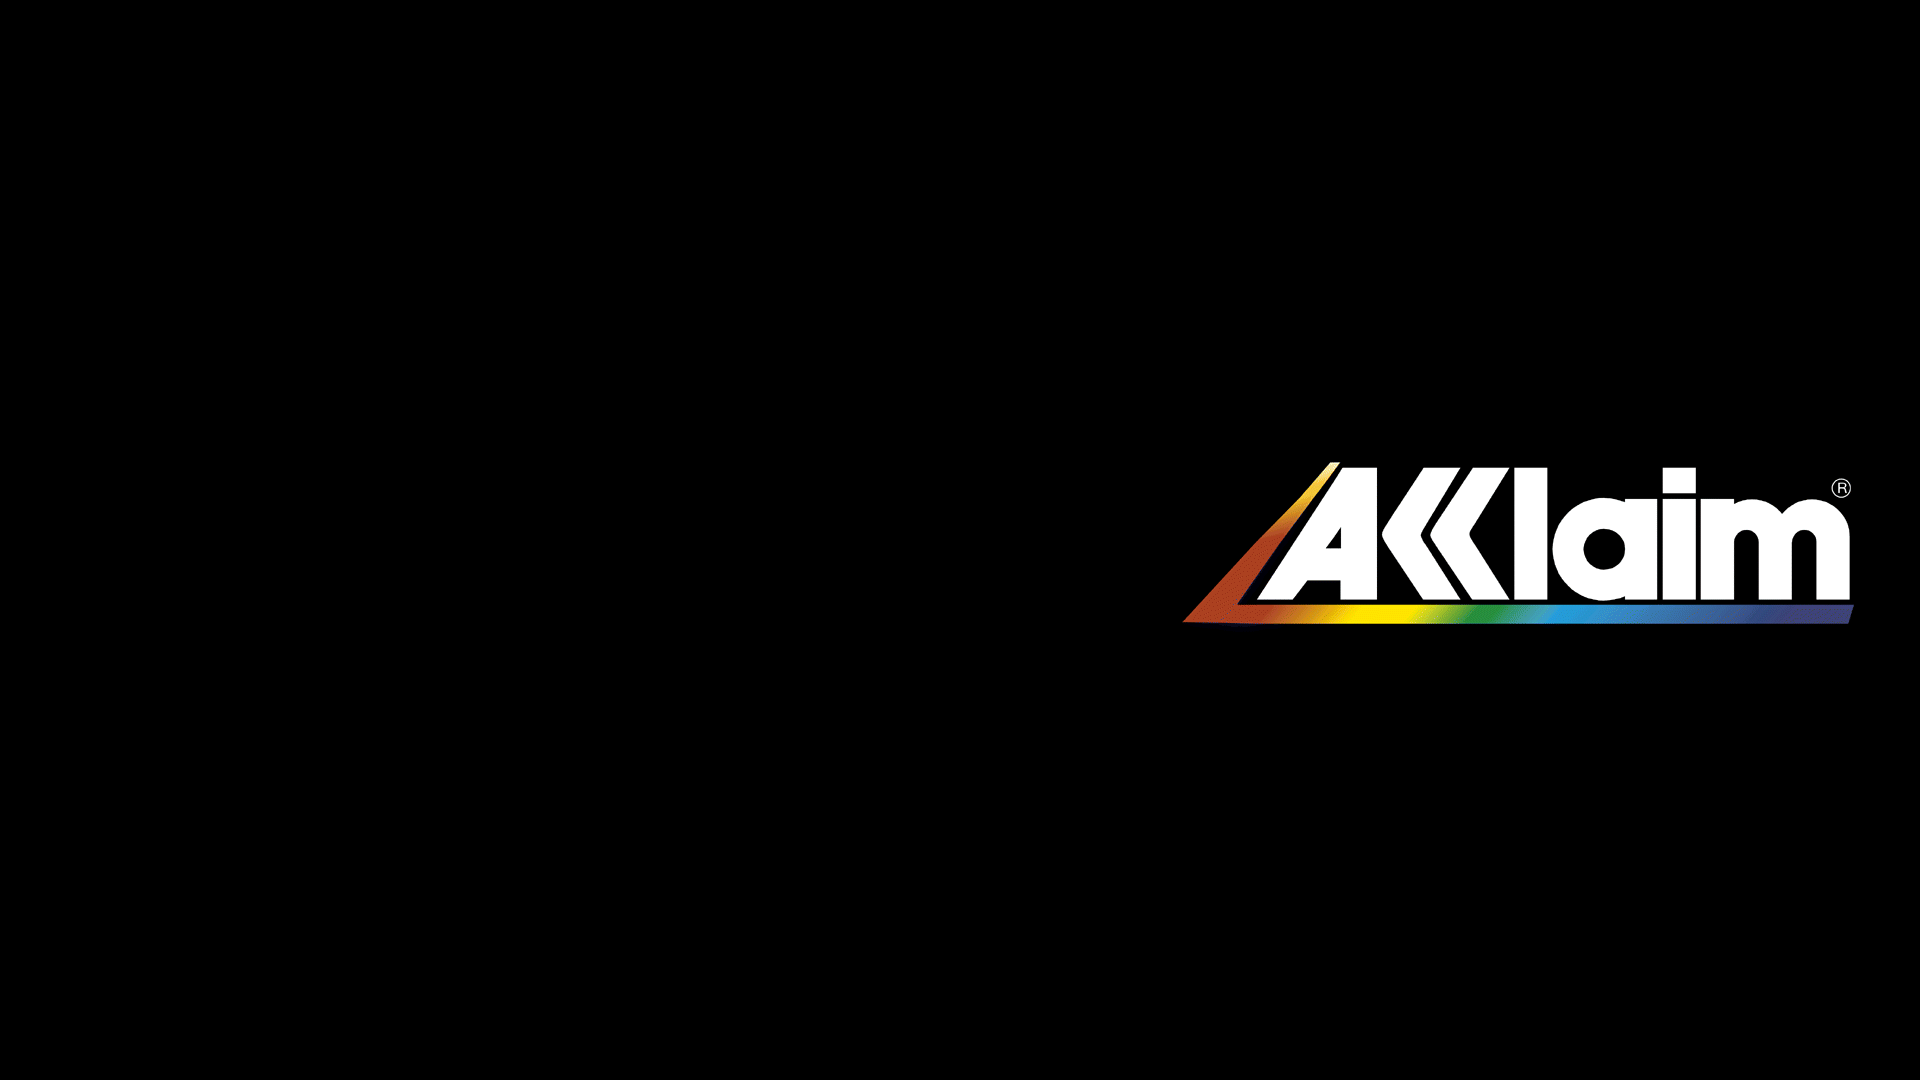 Logo Akklaim Simple Background 1920x1080